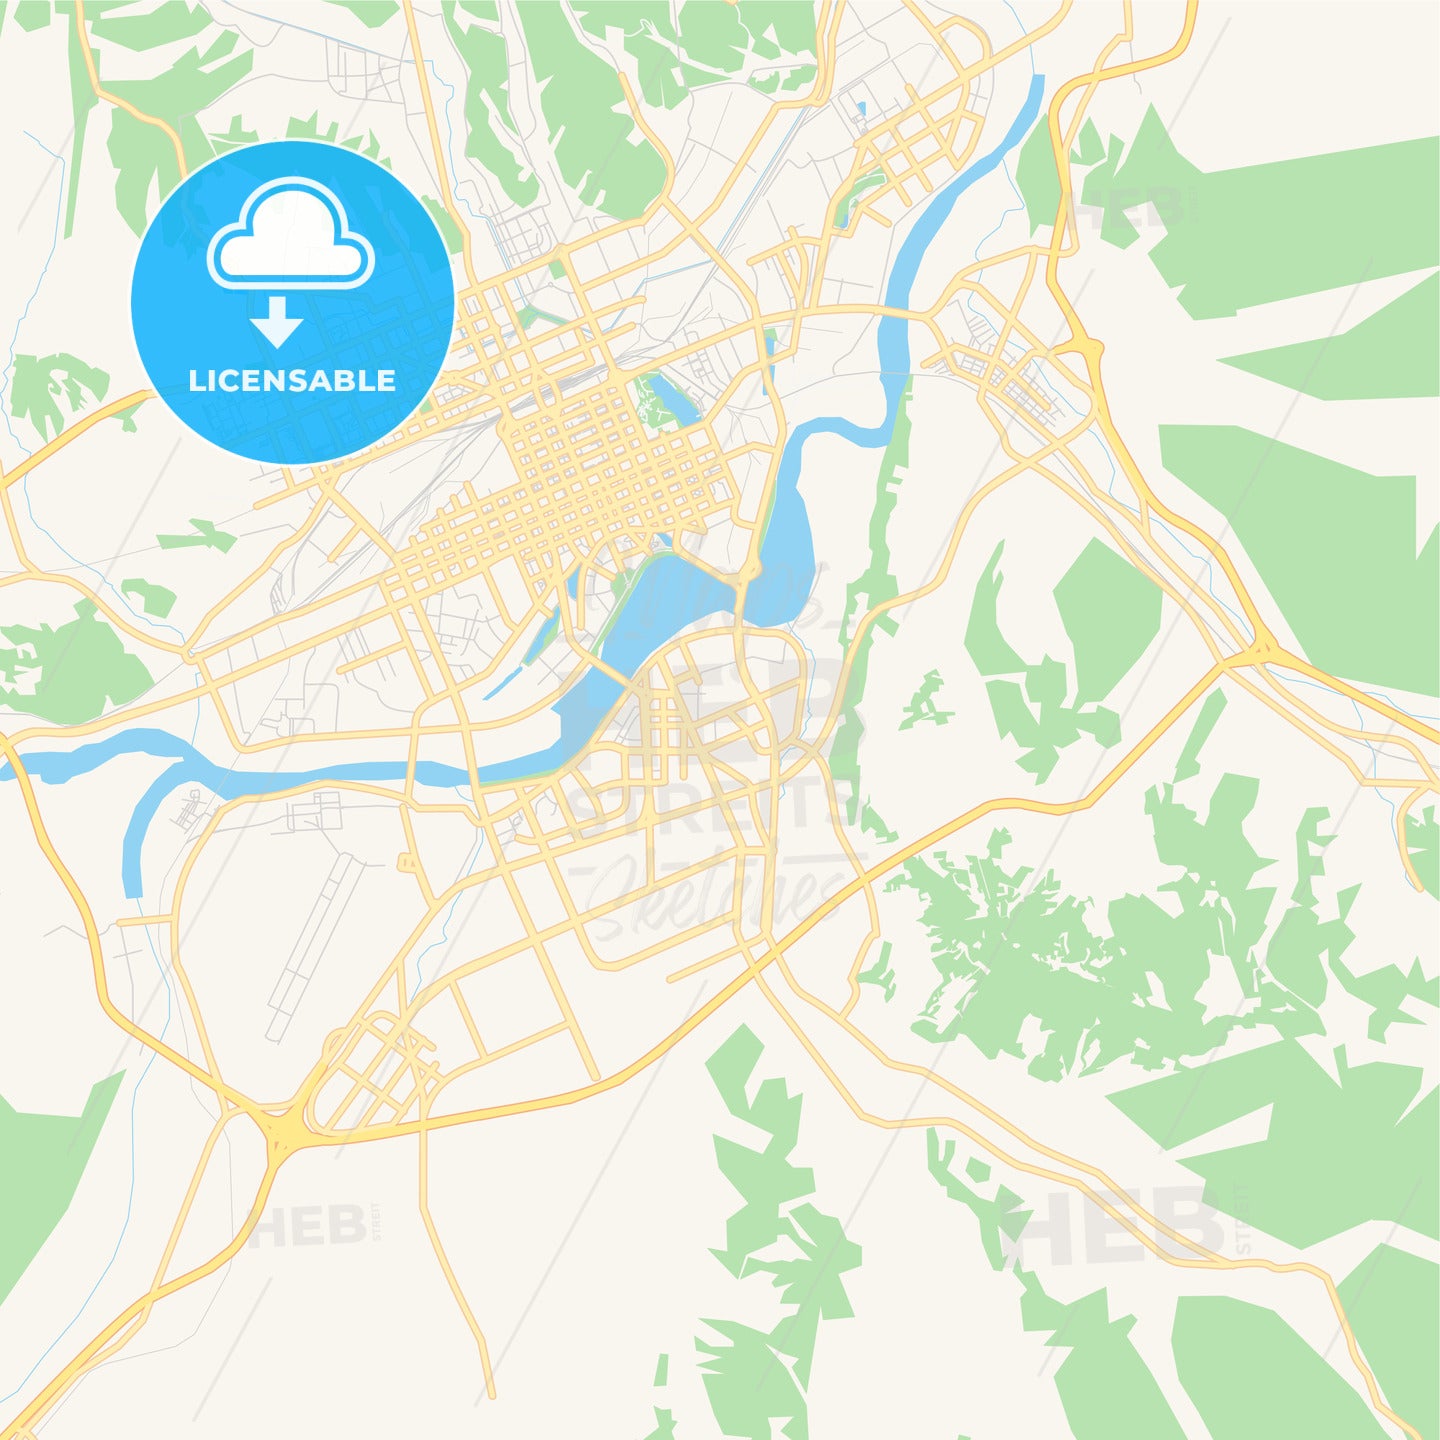 Printable street map of Mudanjiang, China